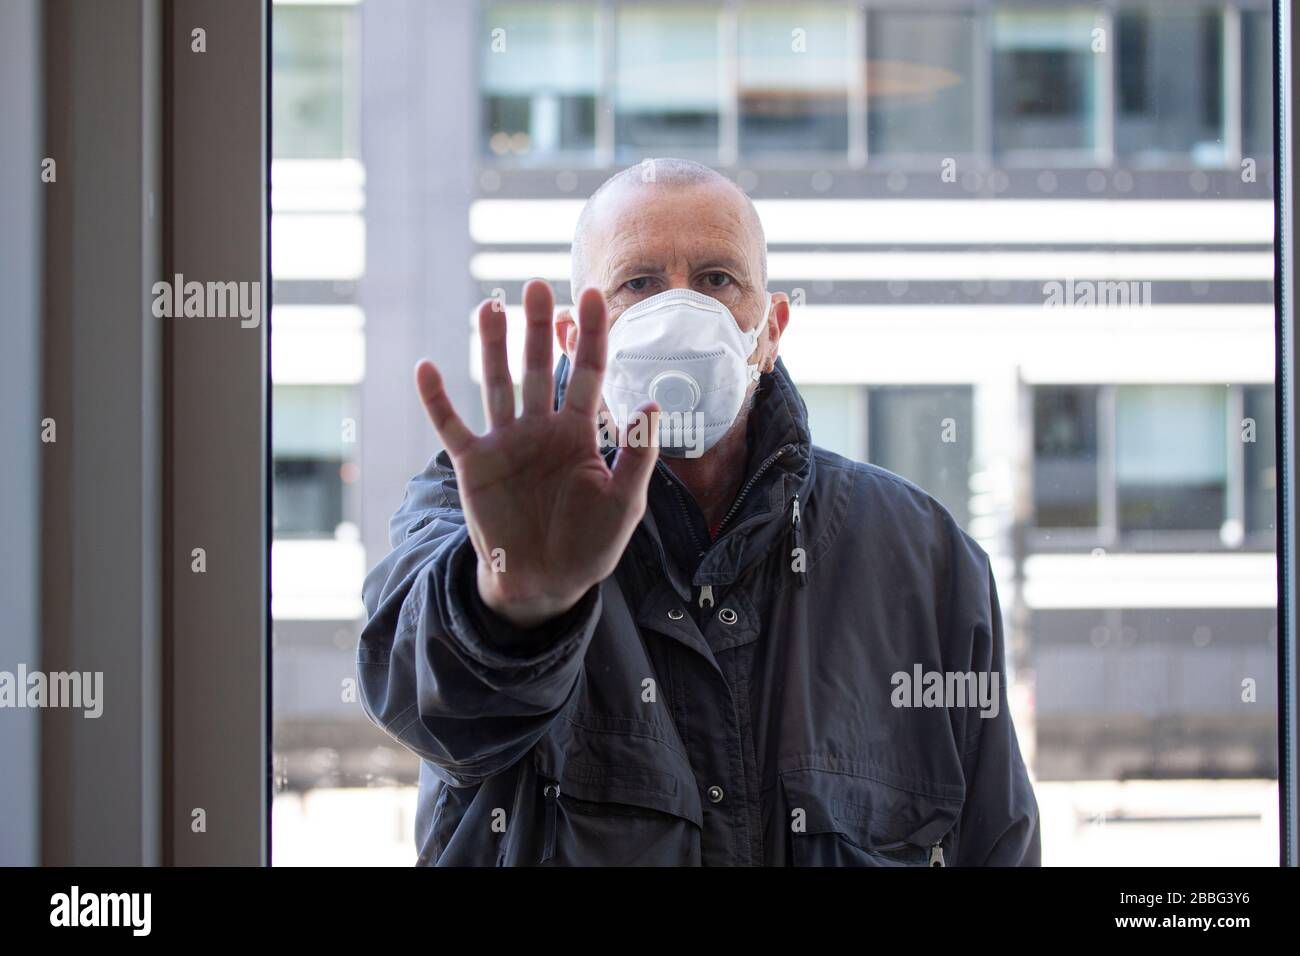 Mann mit medizinischer Gesichtsmaske, der außerhalb eines Fensterabschnitts steht, wobei die rechte Hand gegen das Fensterglas gedrückt und nach innen blickt. Corona Covid-19 Viru Stockfoto